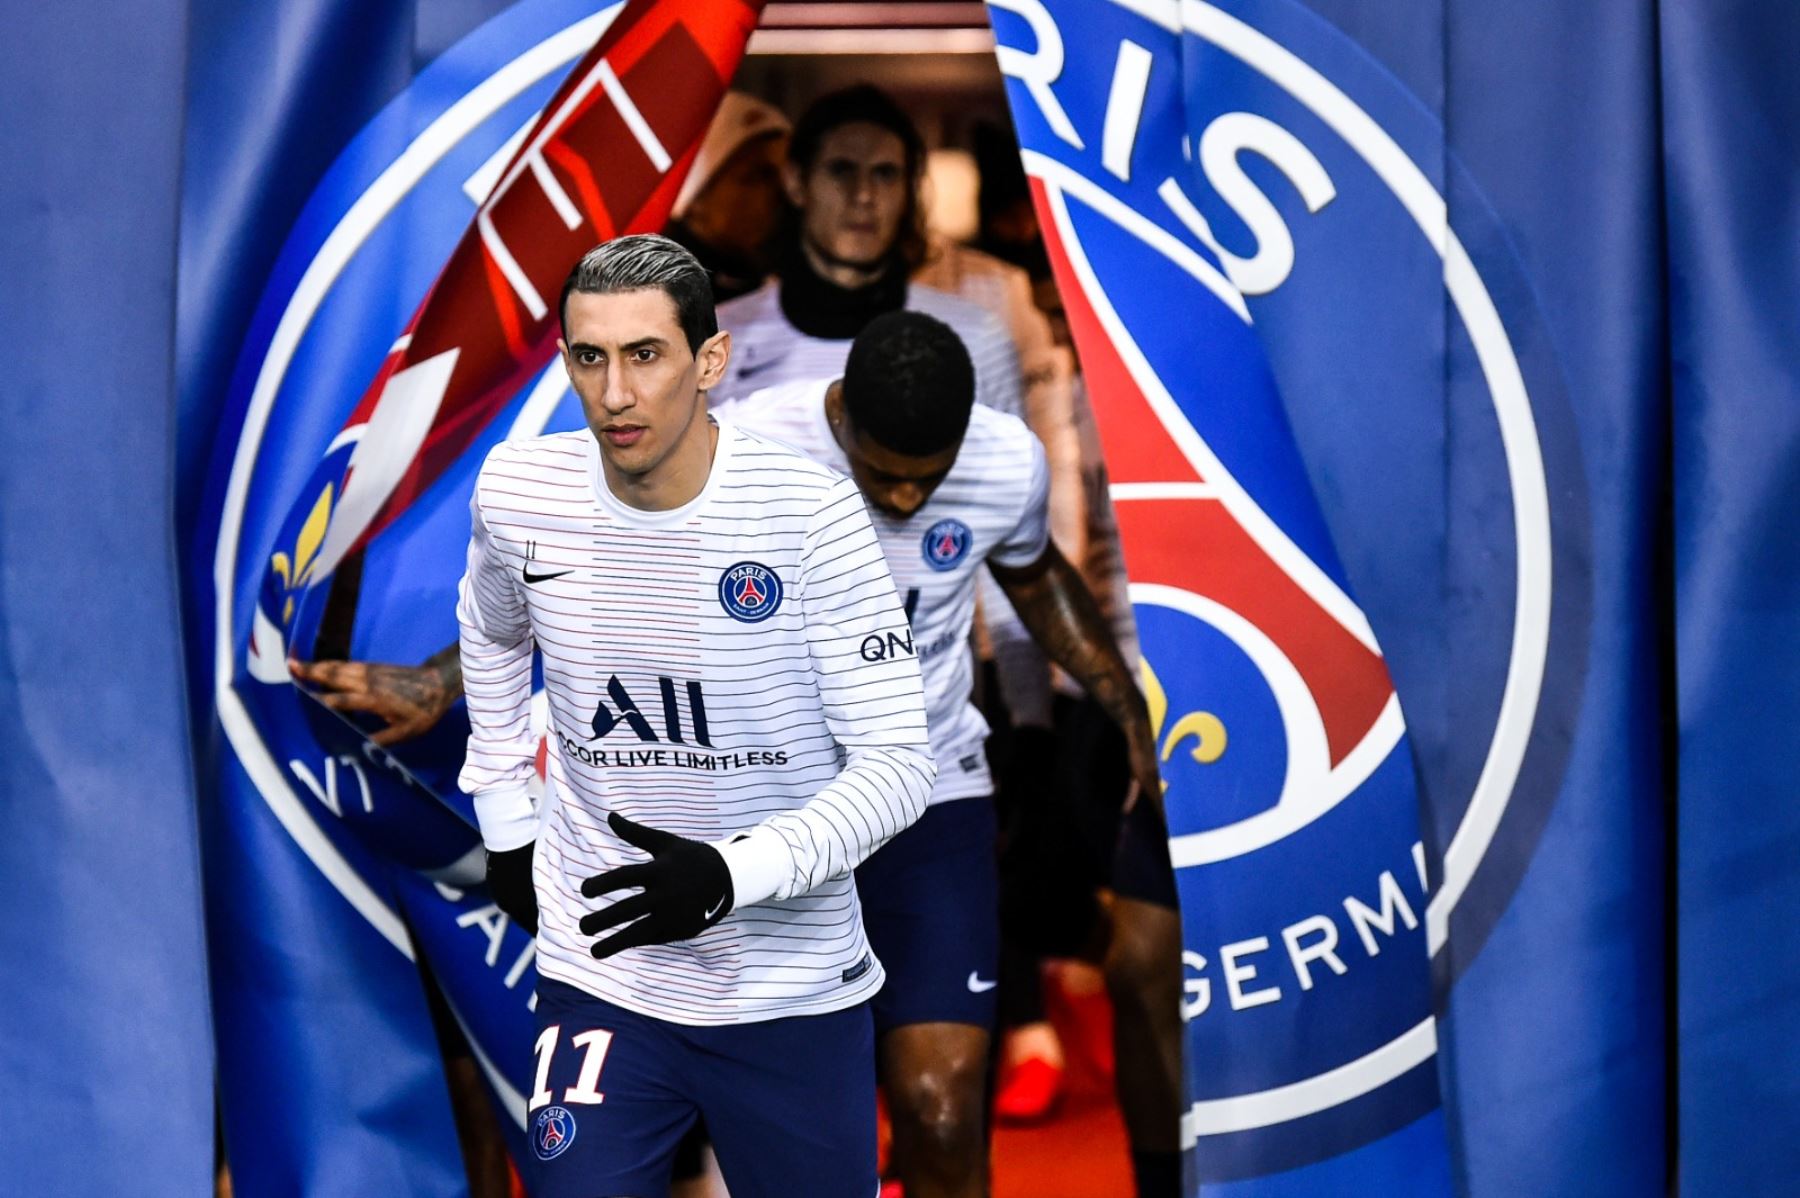 El campeonato de Francia de fútbol 2019-2020 fue interrumpido definitivamente el 8 de marzo a causa de la pandemia. Twitter